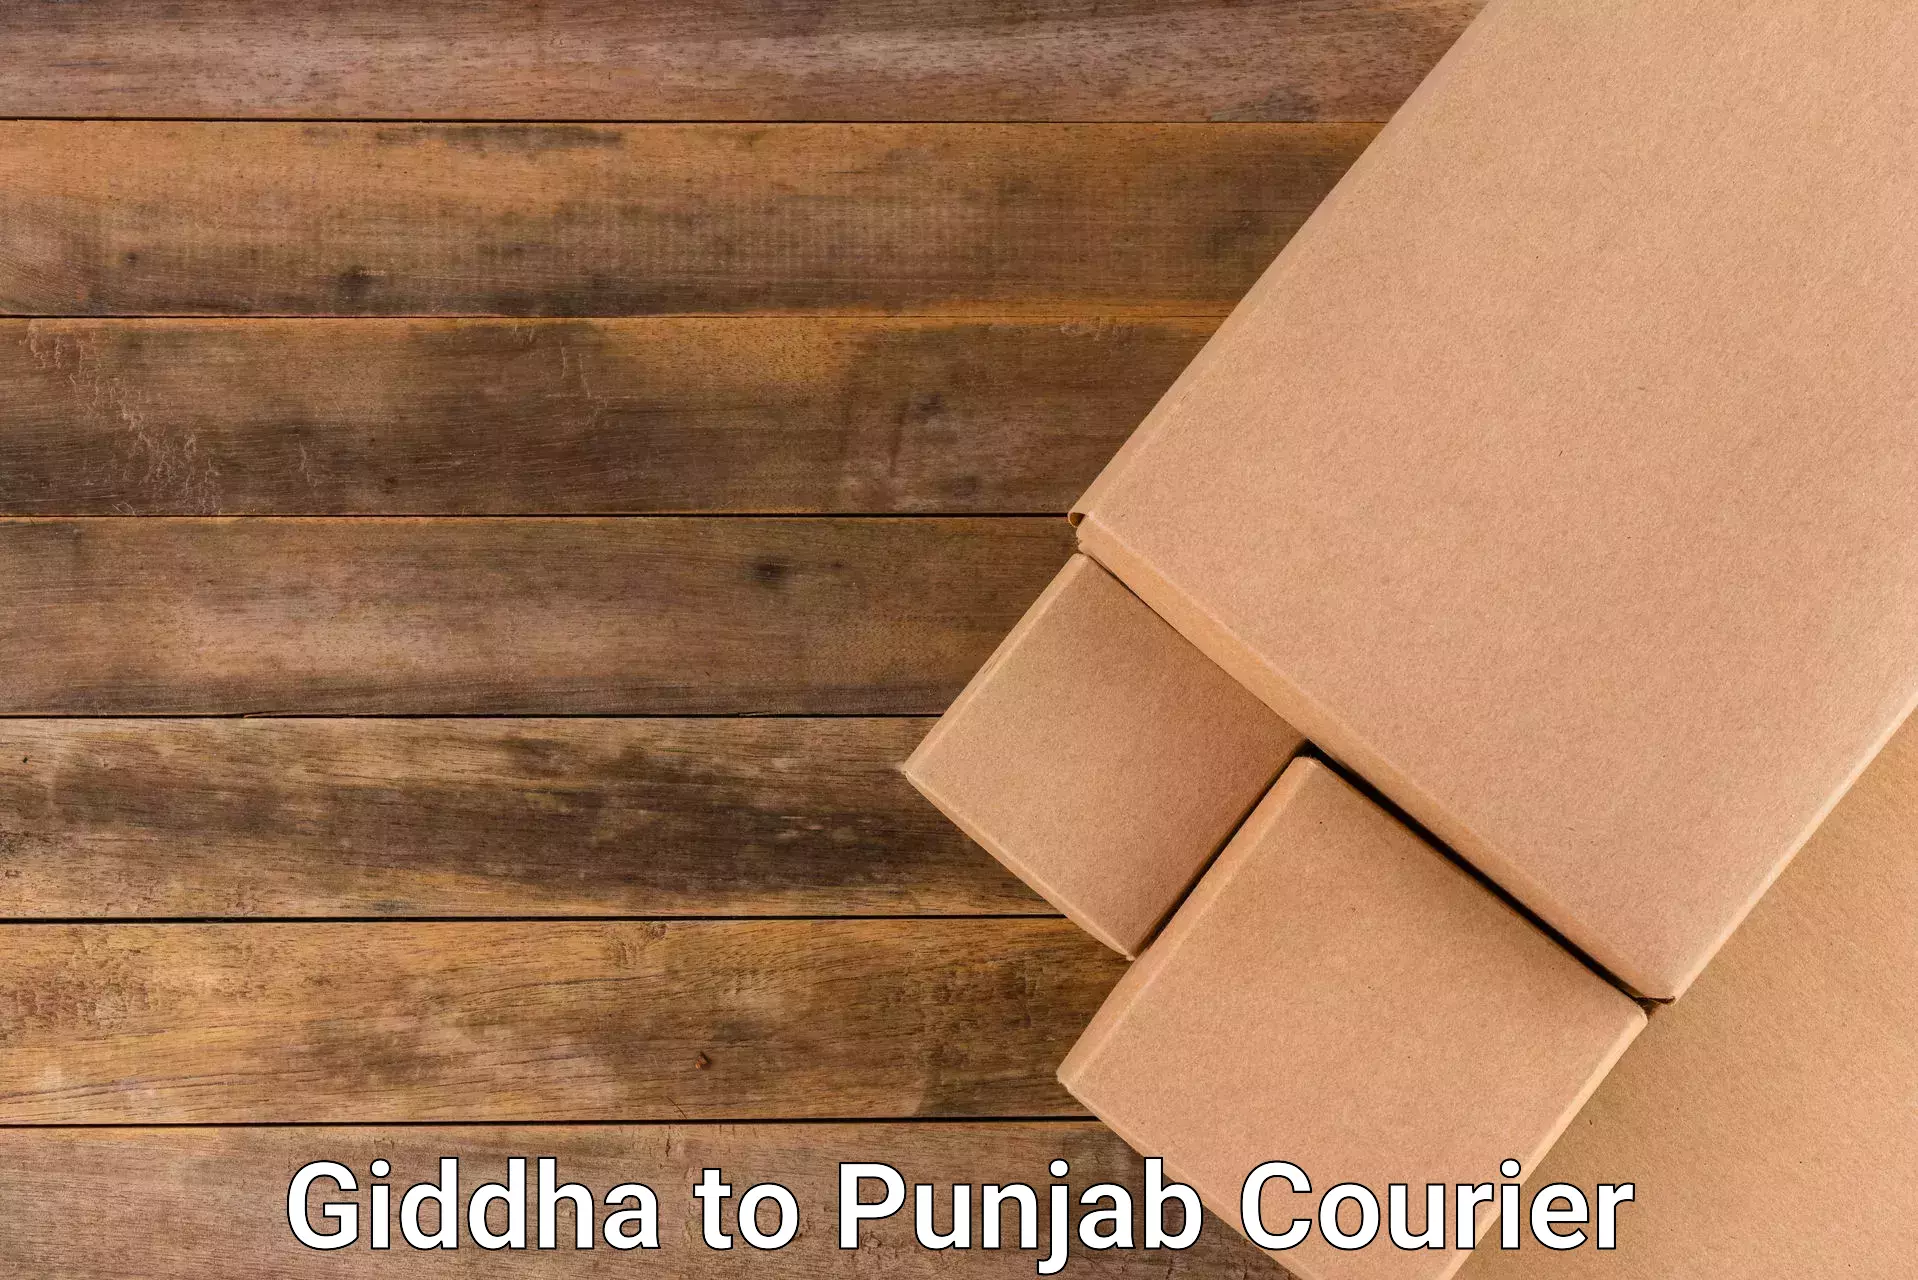 Efficient shipping platforms Giddha to Ajnala